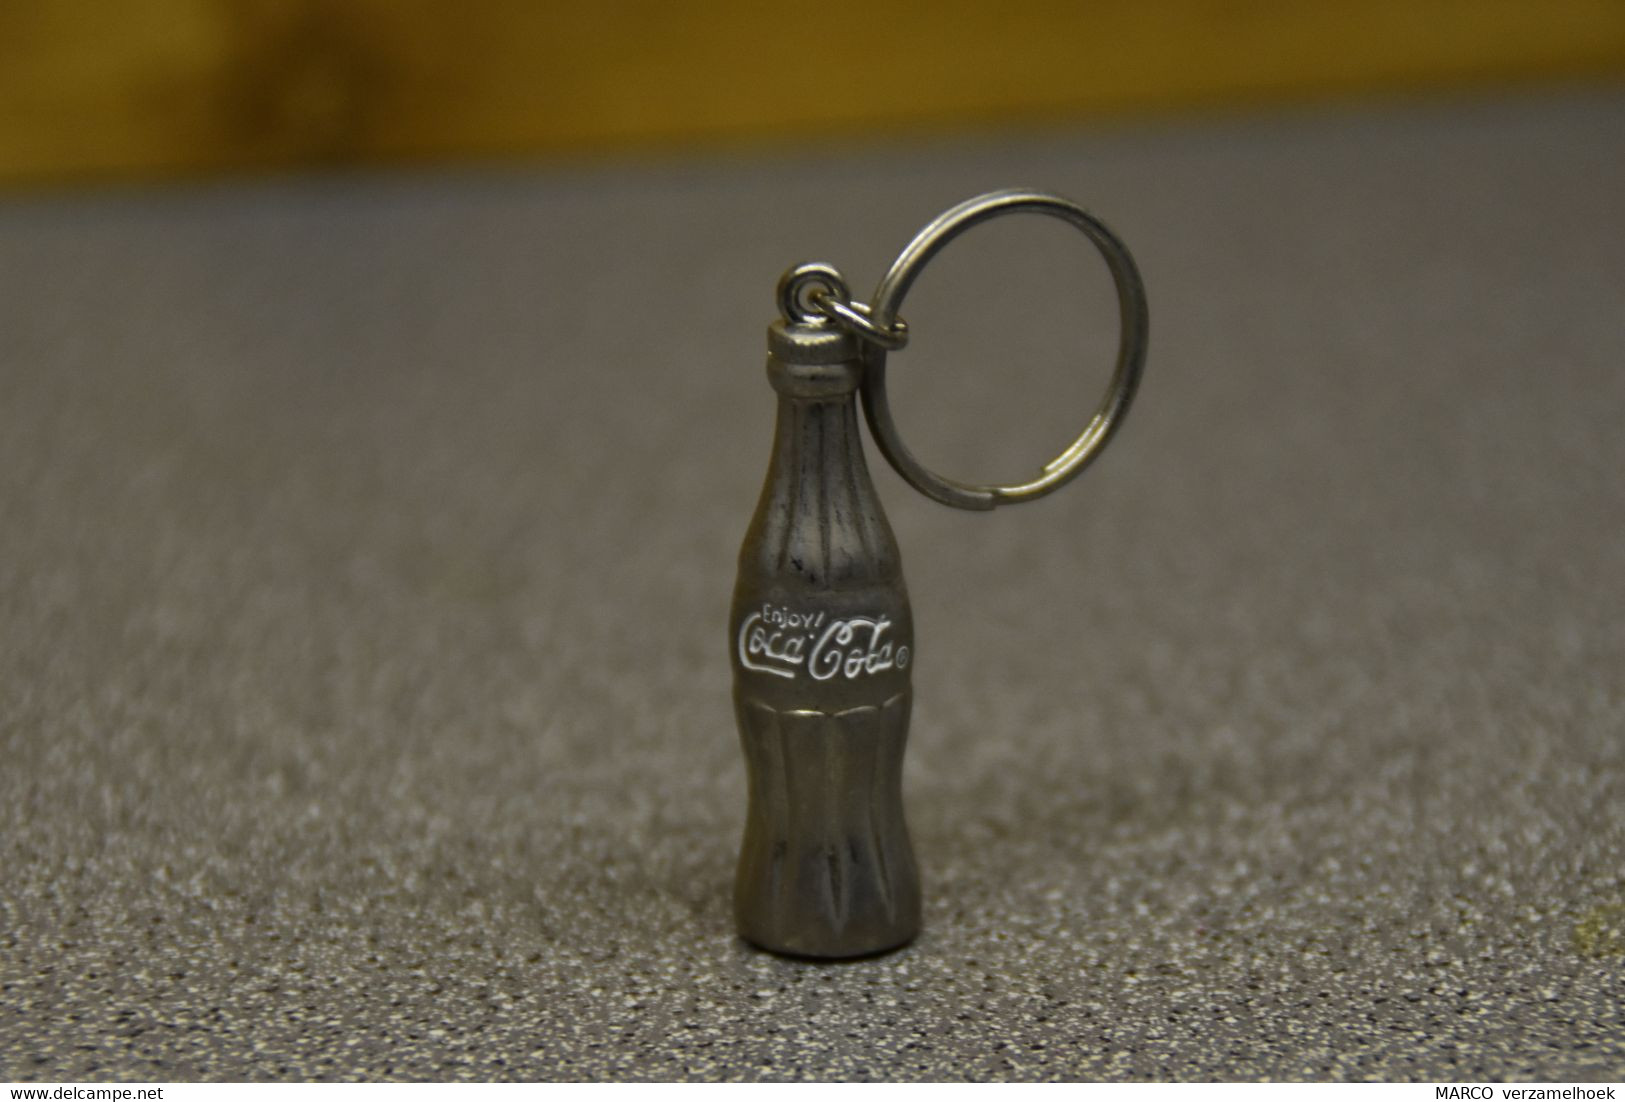 Coca-cola Company Porte Clé-sleutelhanger-key Chain - Porte-clefs